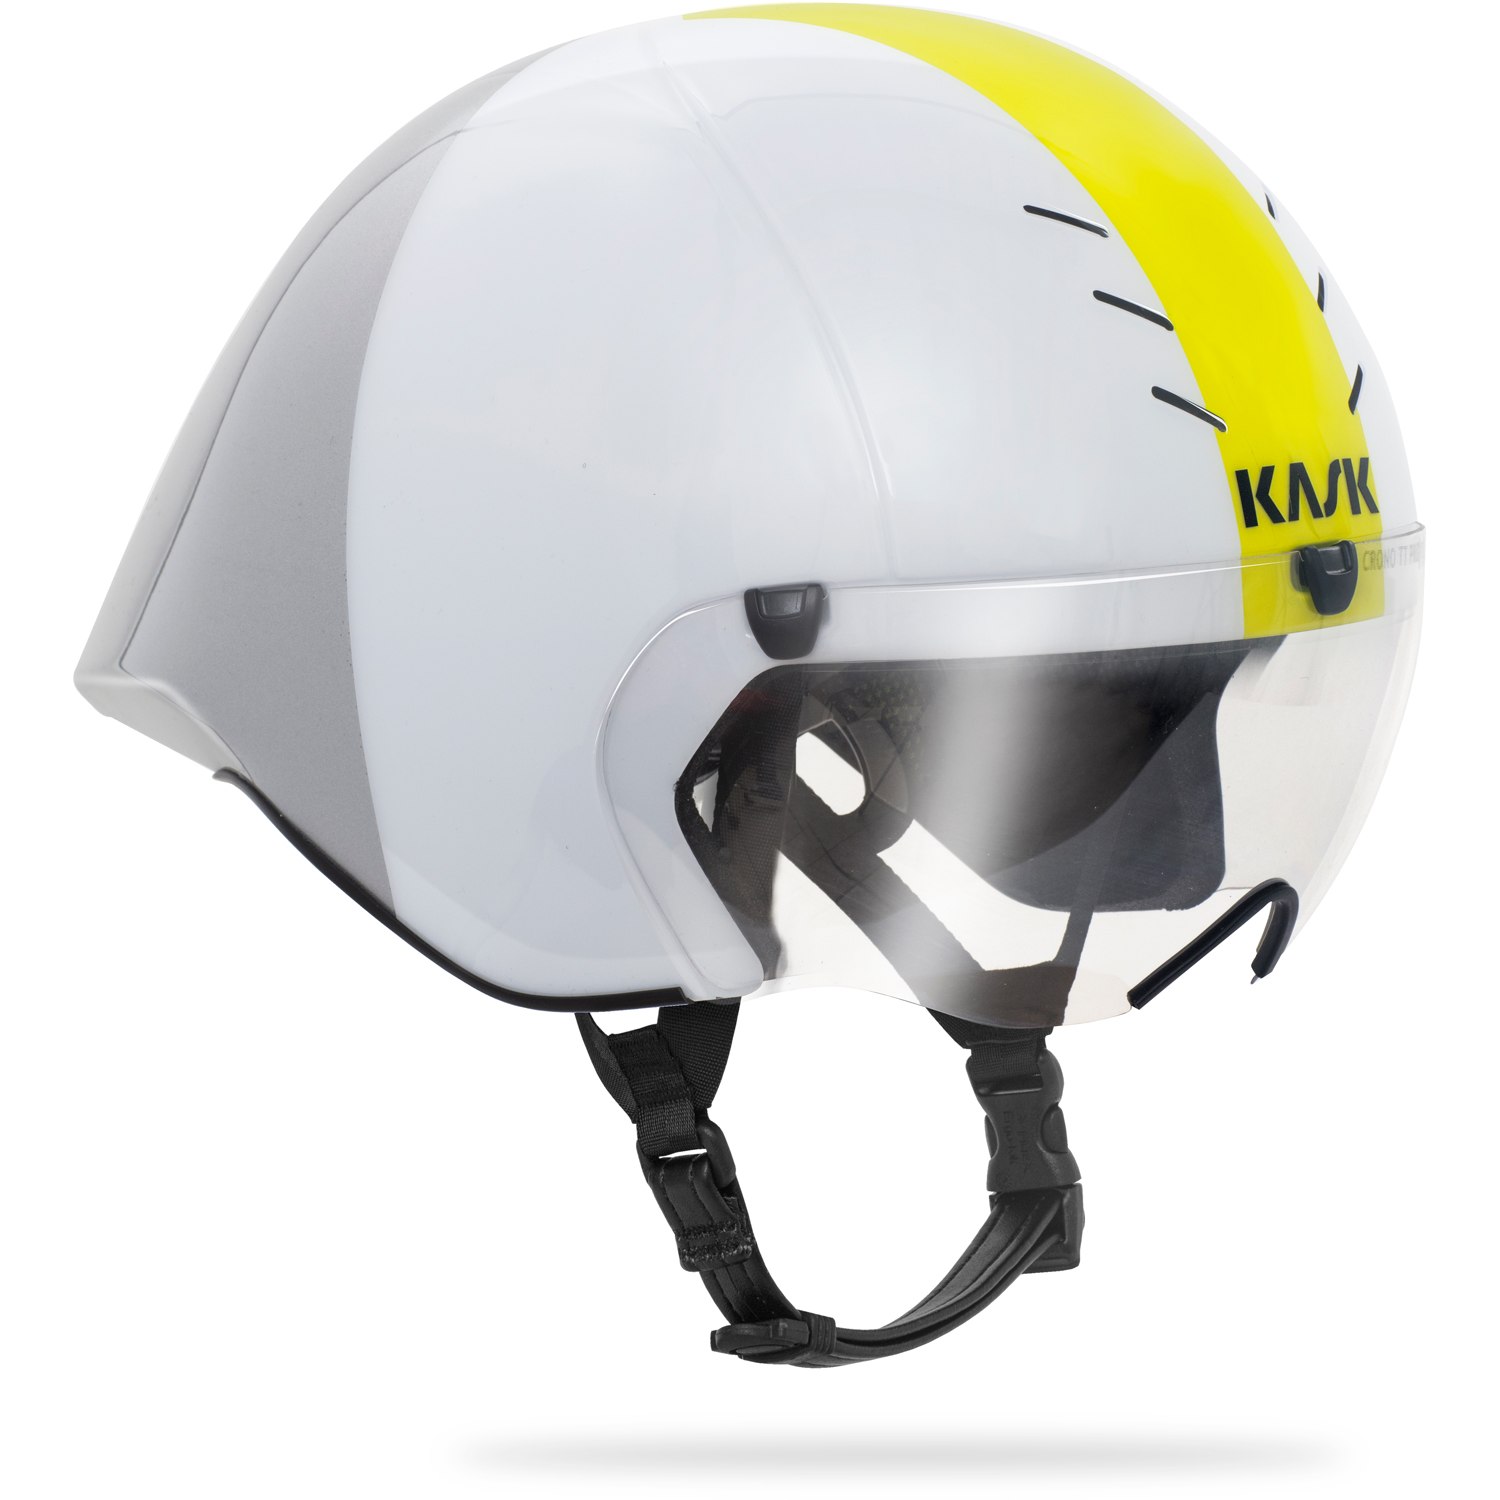 Productfoto van KASK Mistral Trial Helmet - White/Silver